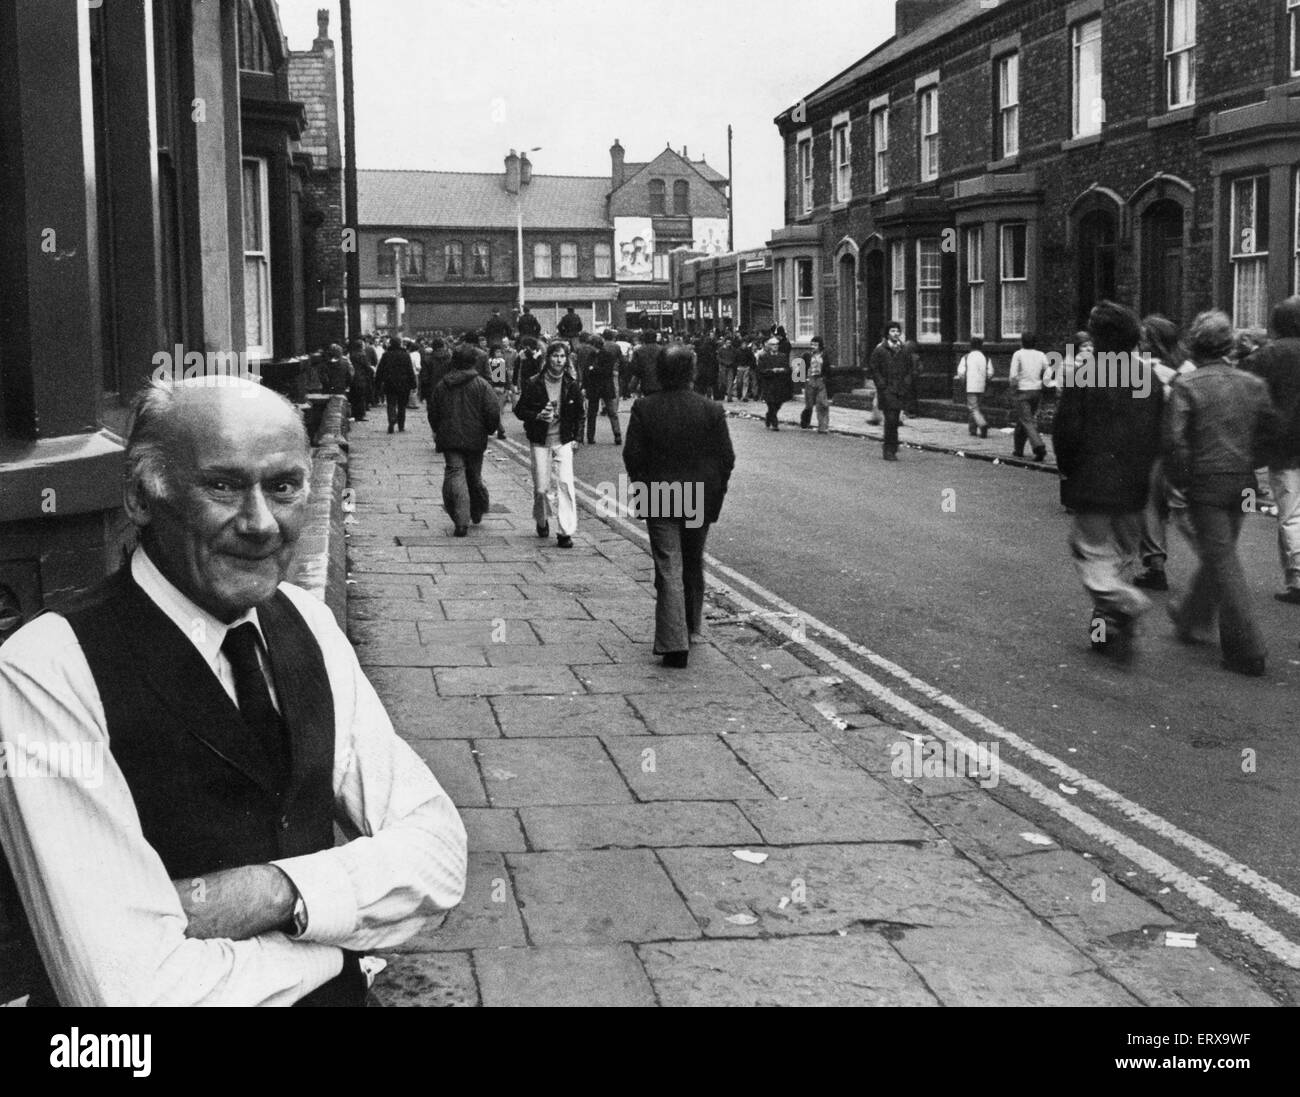 Herr Albert Langfield hier vor seinem Haus in Kemlyn Road zu sehen. Wie Fans ihren Weg an der Anfield Road zu sehen, die Liverpool V Manchester United übereinstimmen. 3. Mai 1977 Stockfoto